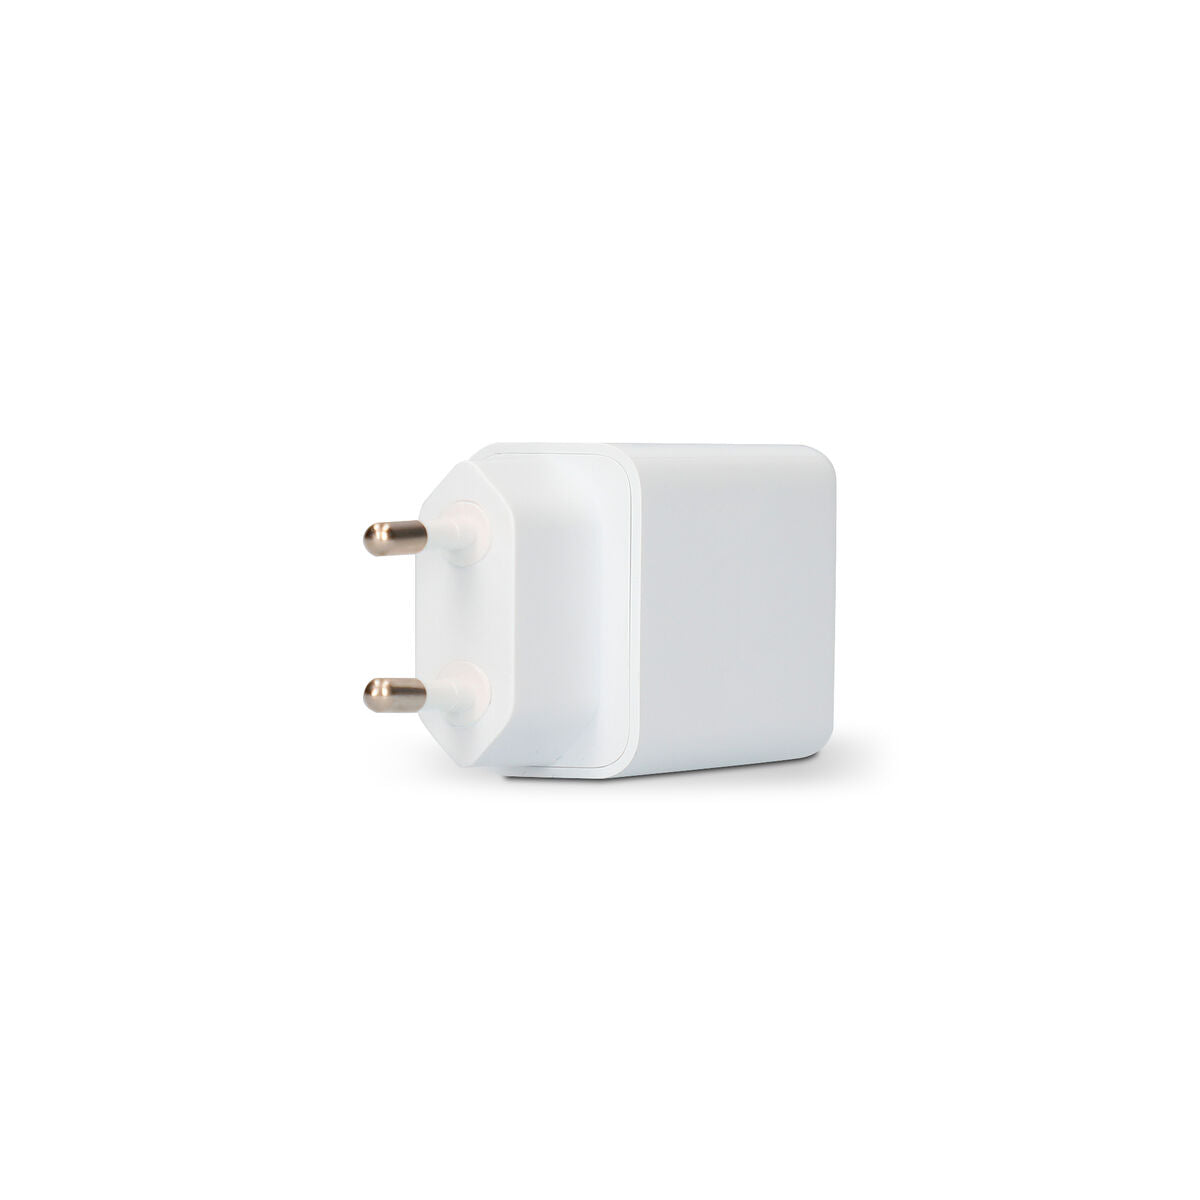 Chargeur mural + Câble Lightning Câble Certifié MFI KSIX IPhone USB compatible Apple compatible